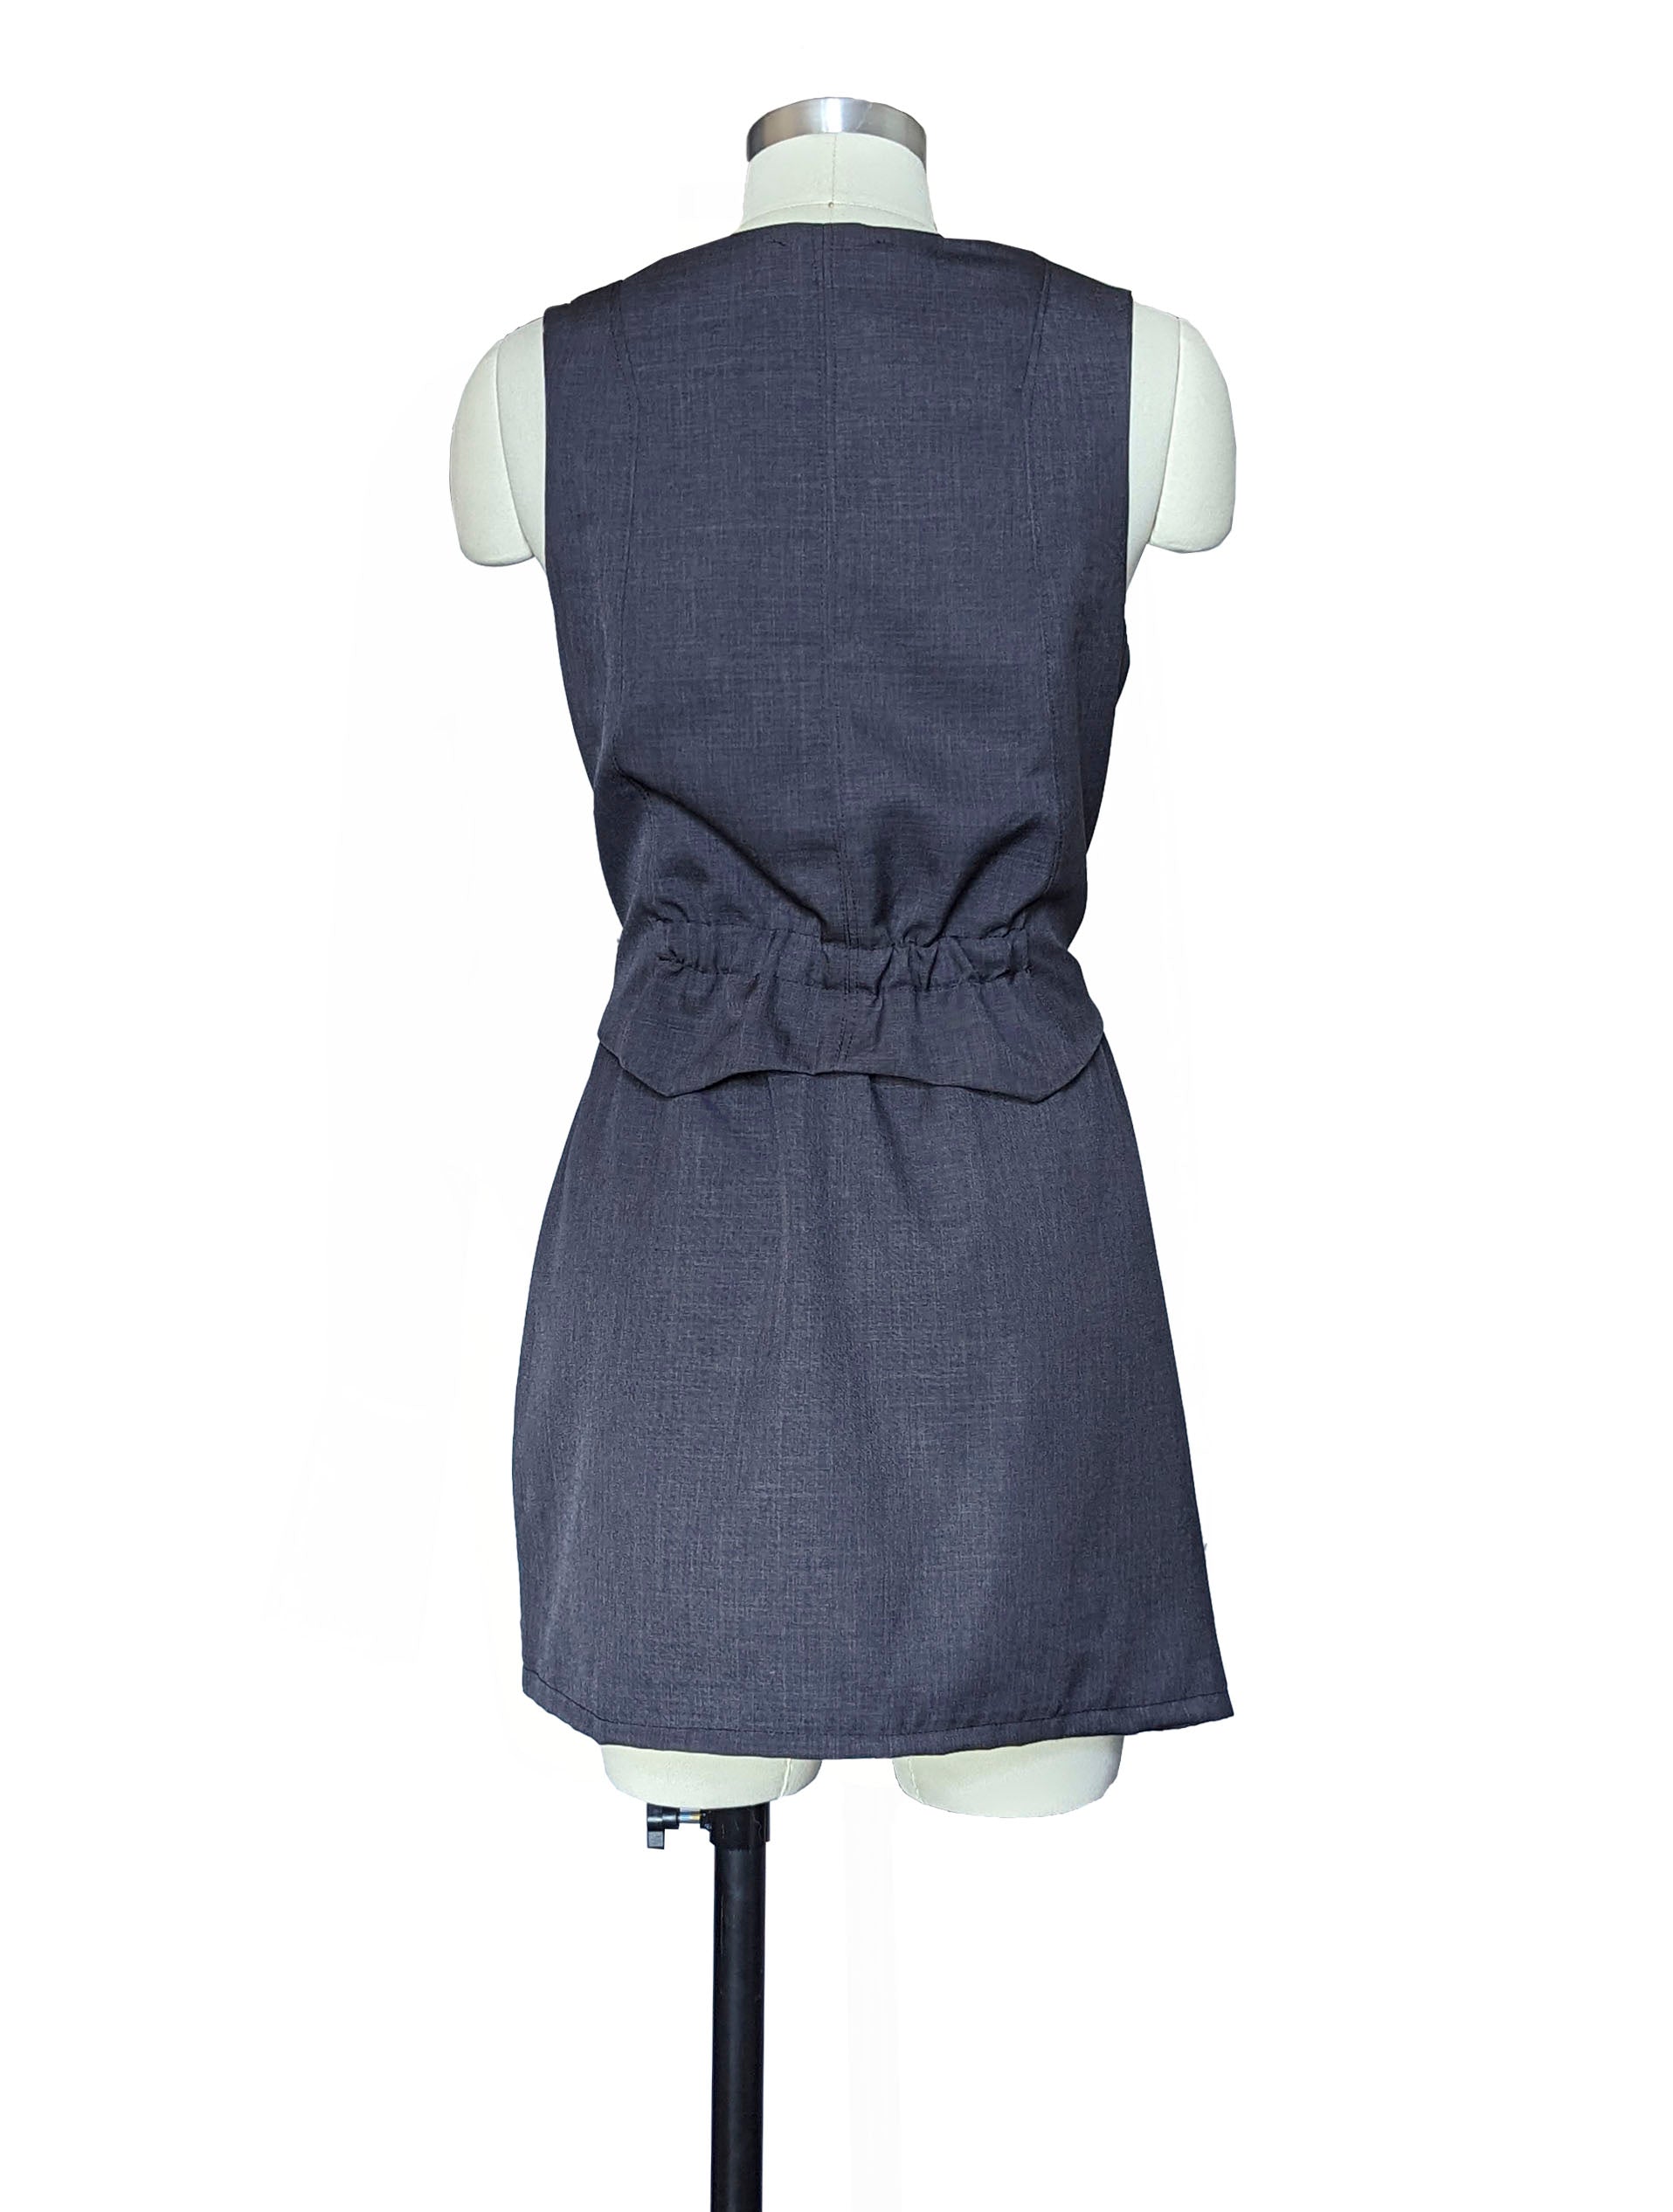 grey vest and skirt set back